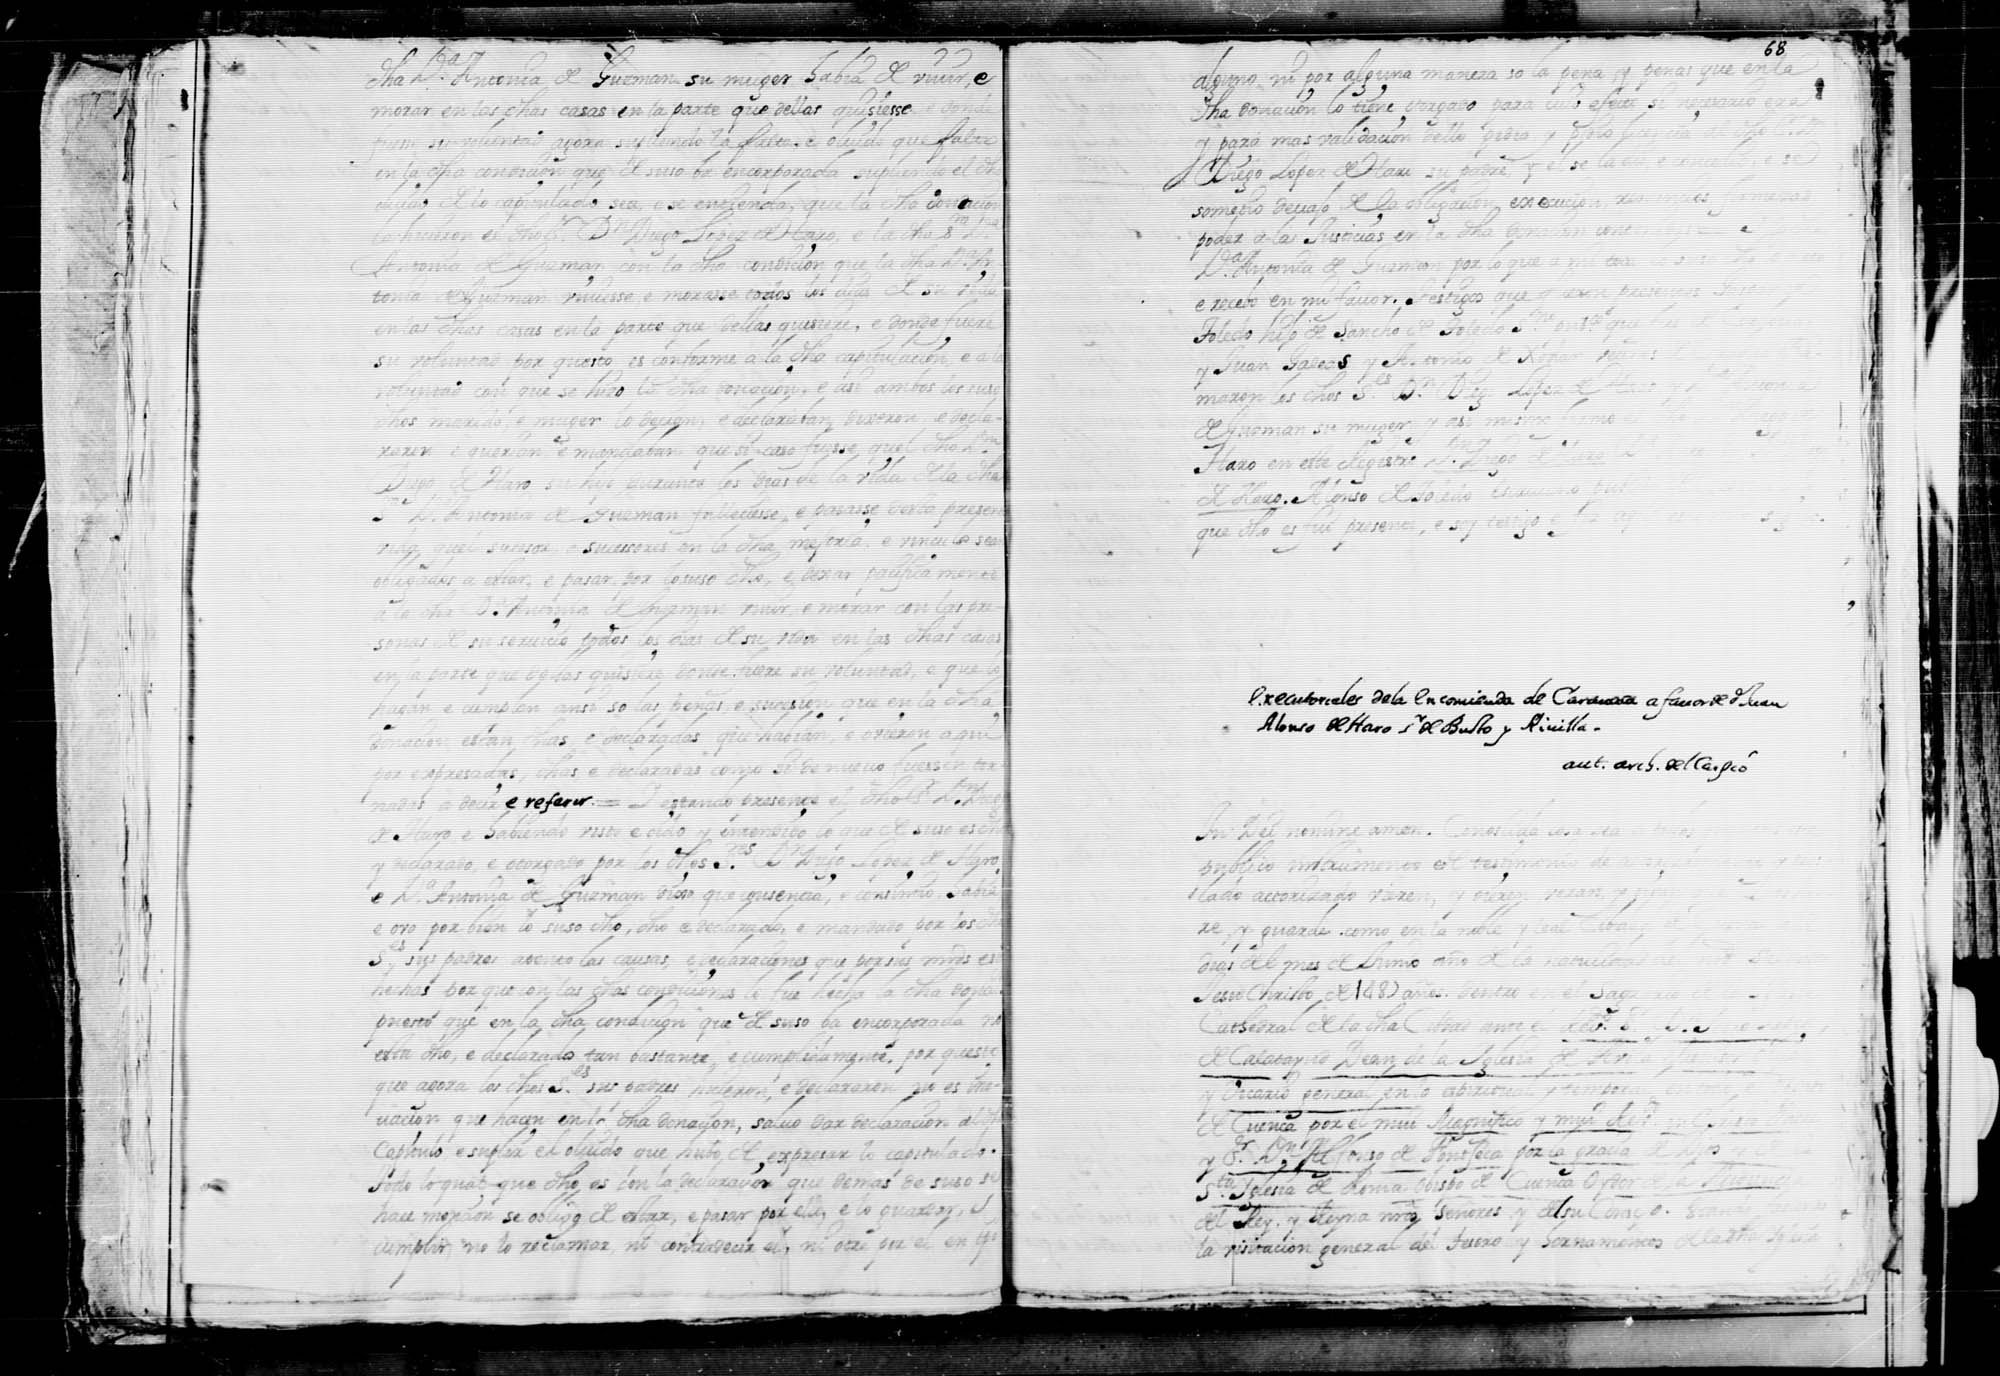 Letras ejecutoriales para la toma de posesión de la encomienda de Caravaca, en la Orden de Santiago, a Juan Alfonso de Haro, señor de Busto